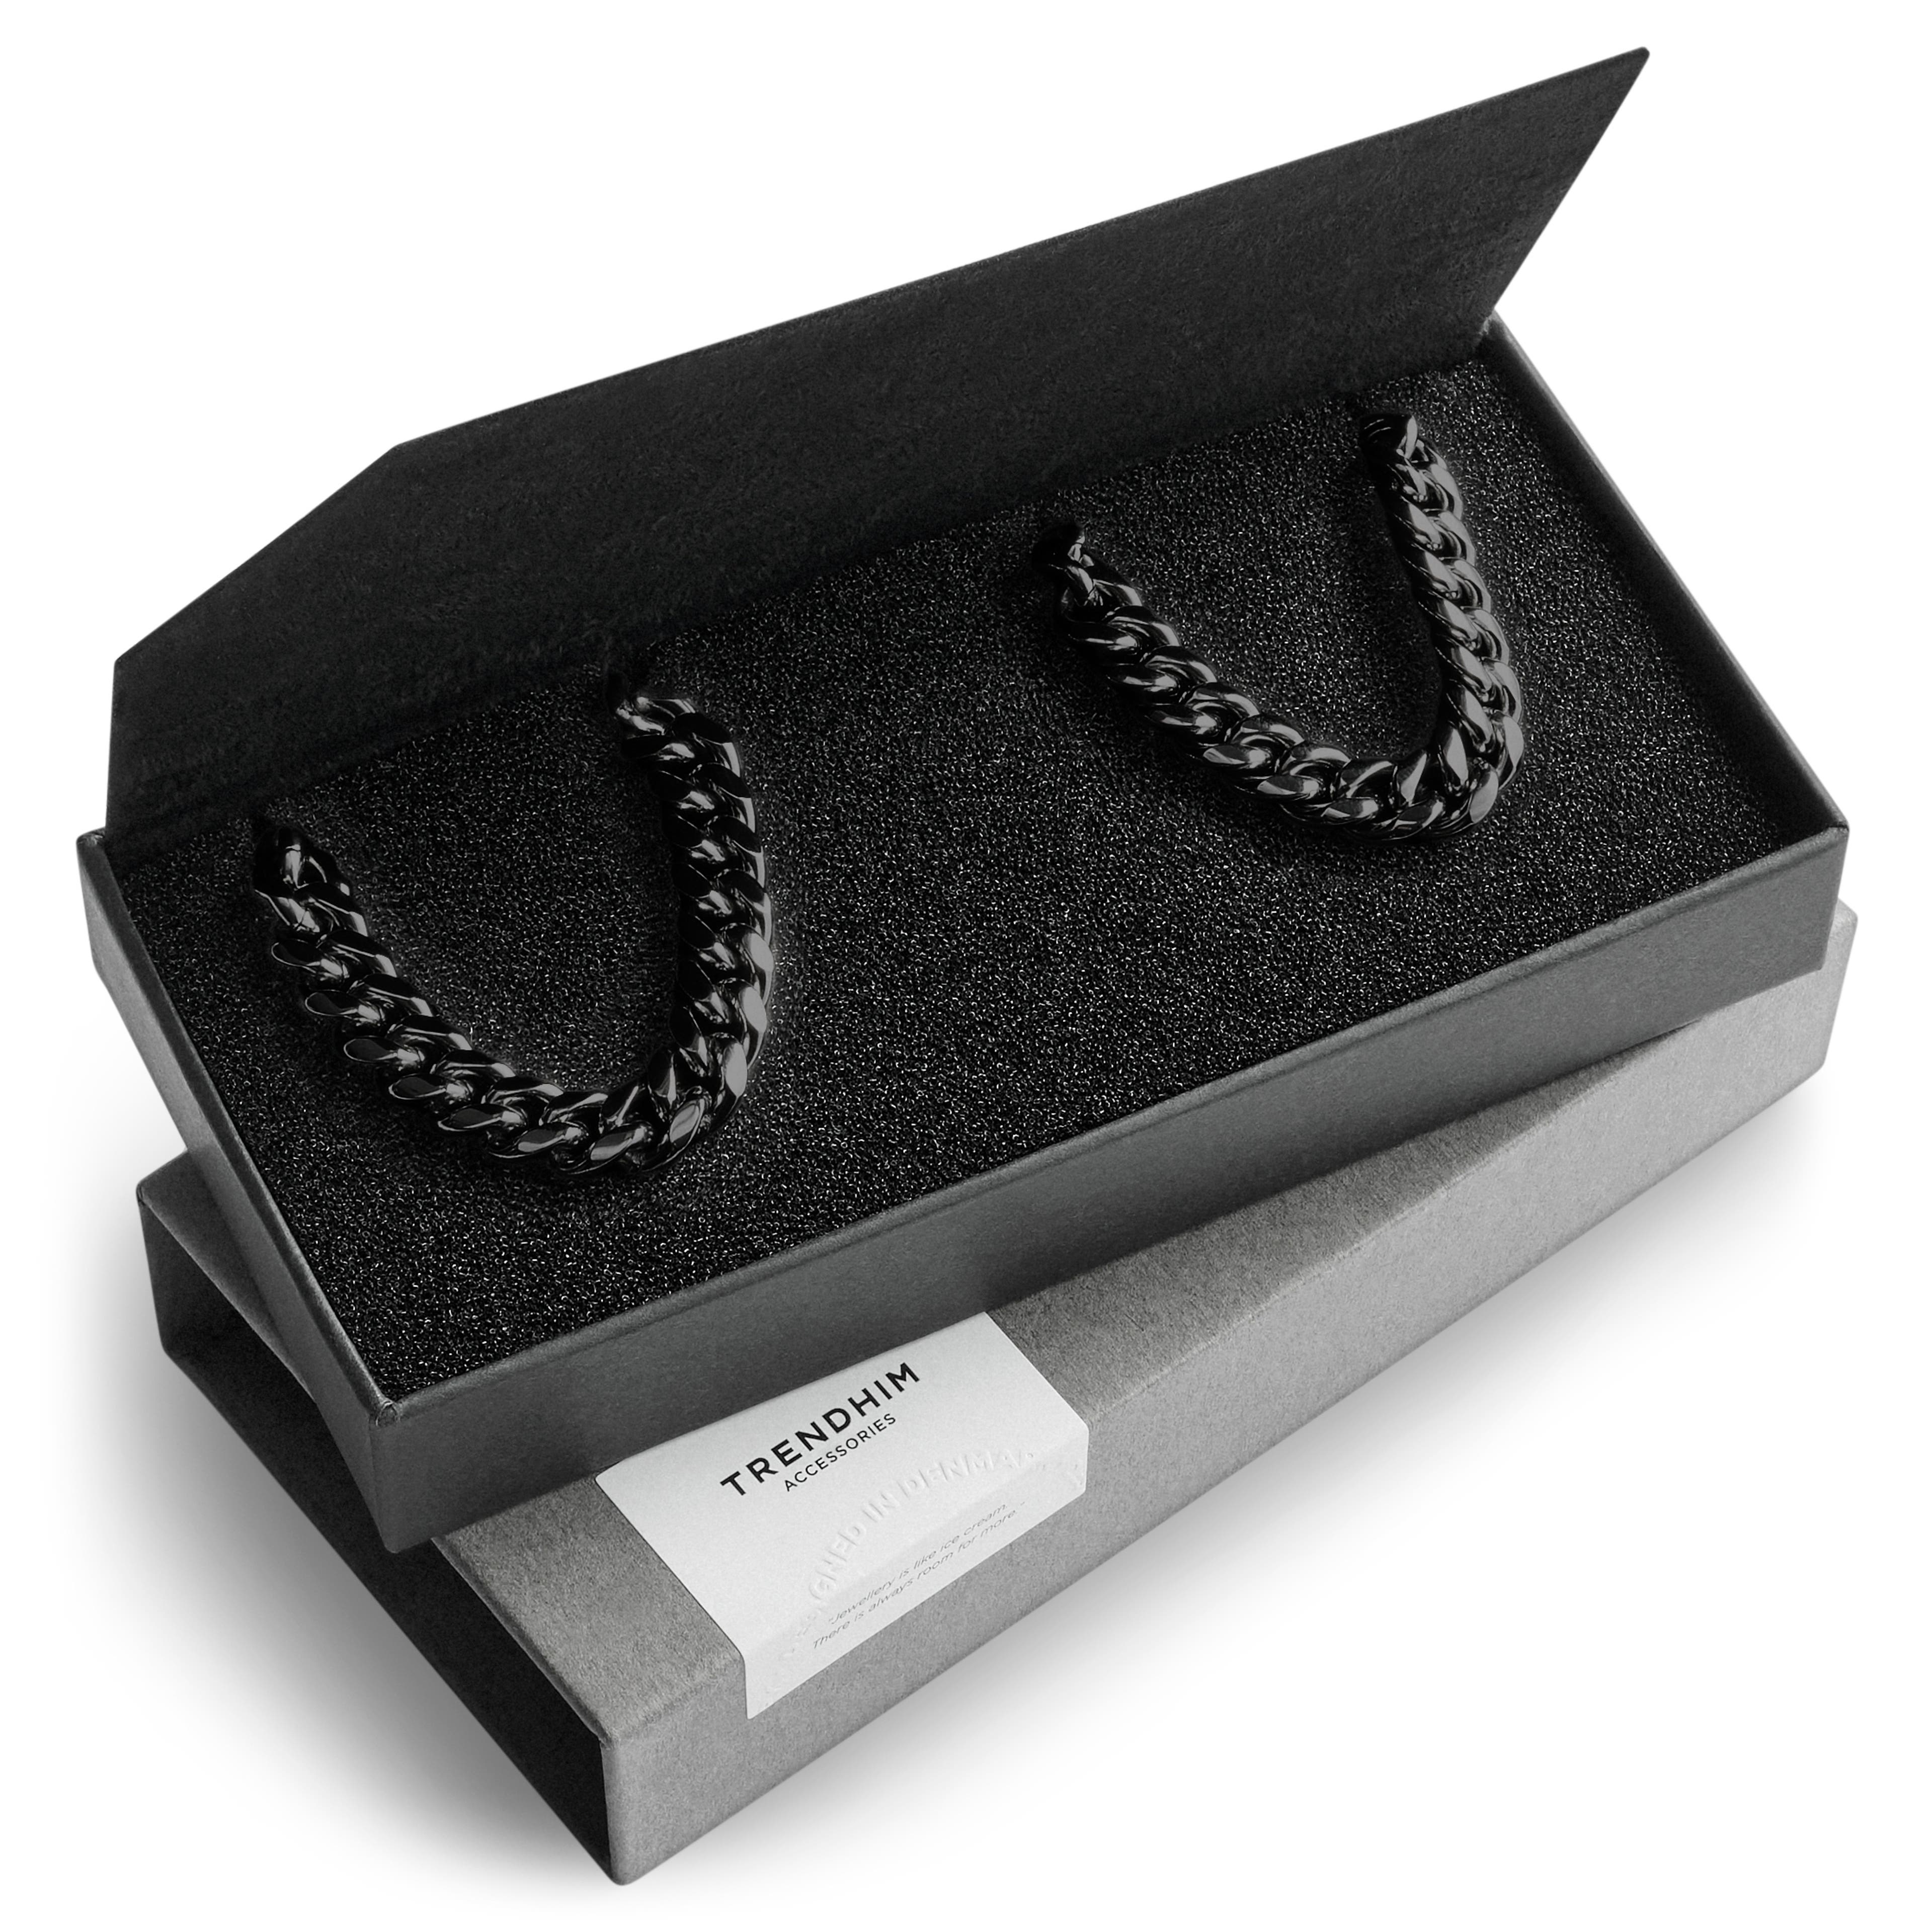 1/3" (8 mm) Black Surgical Steel Bracelet & Necklace Gift Box